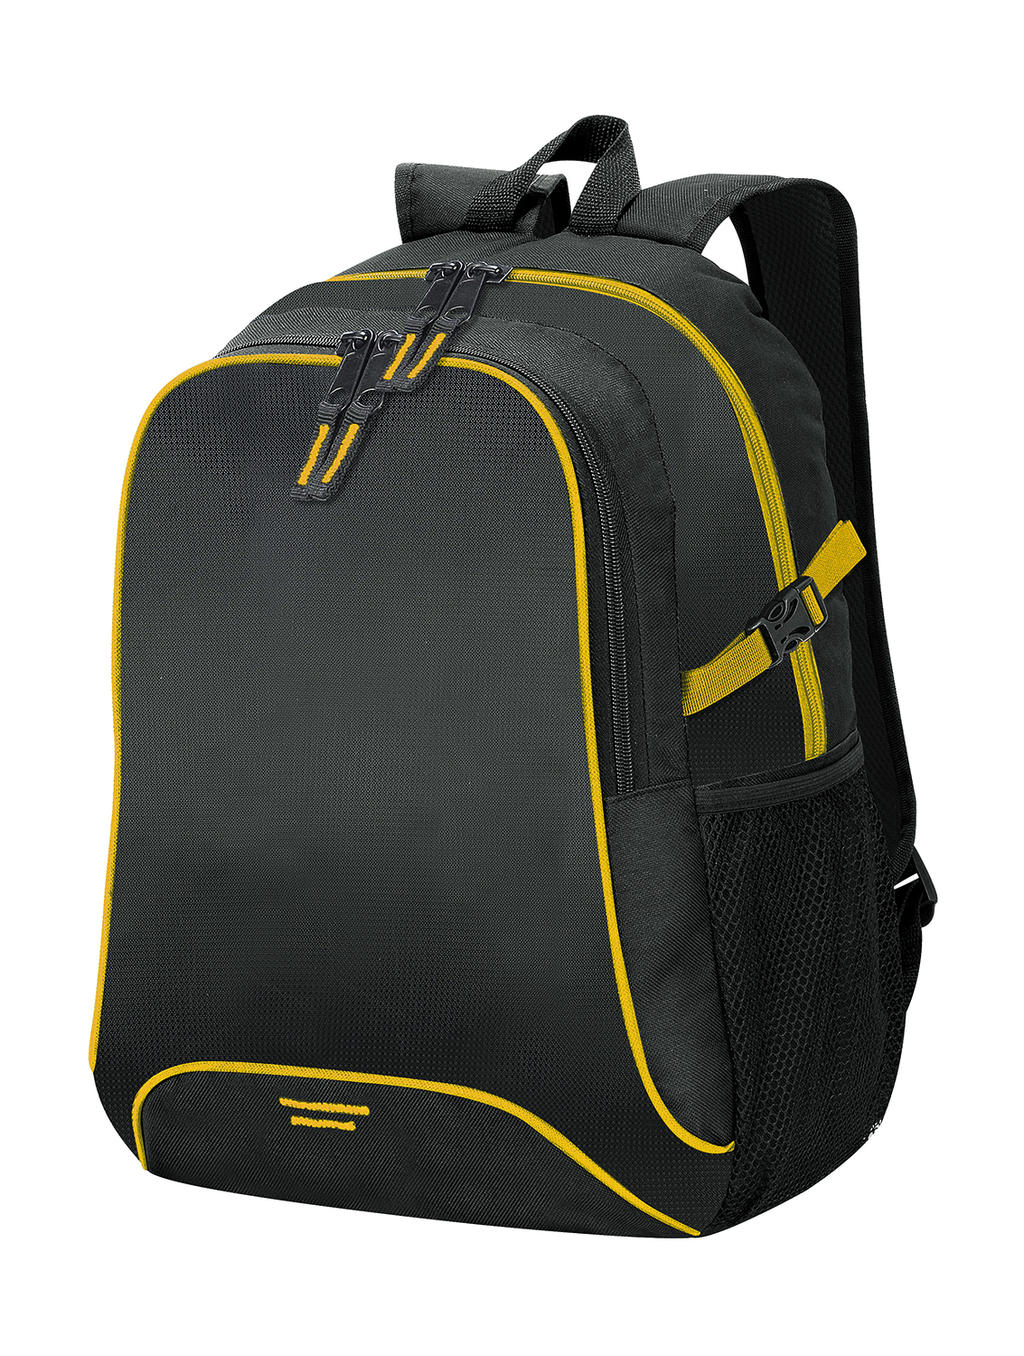  Osaka Basic Backpack in Farbe Black/Yellow